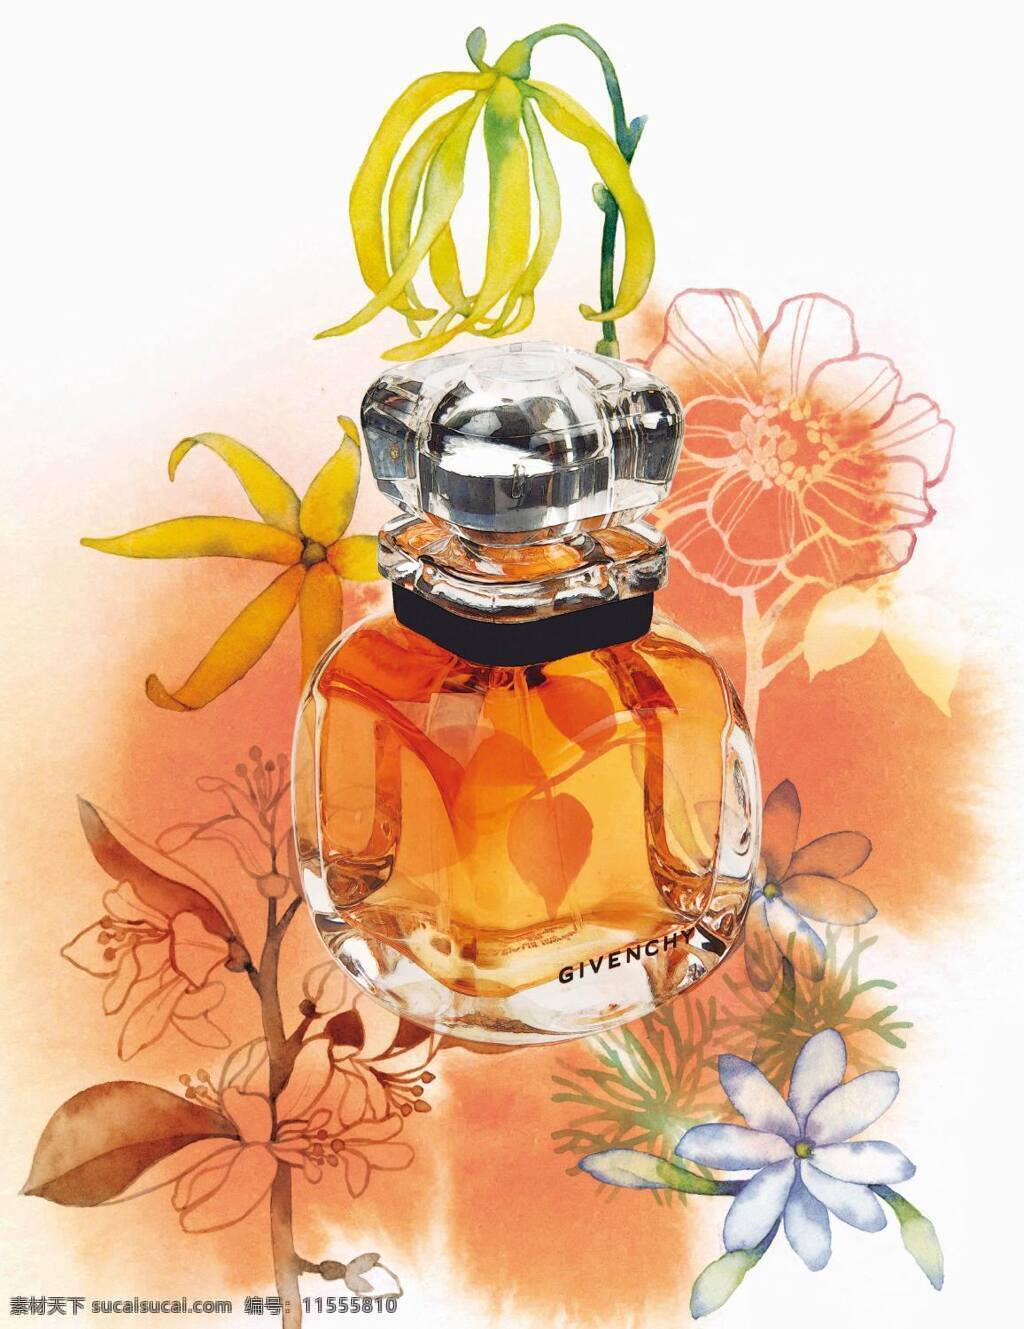 橙色花朵香水 橙色 花朵 香水 生活用品 高档香水